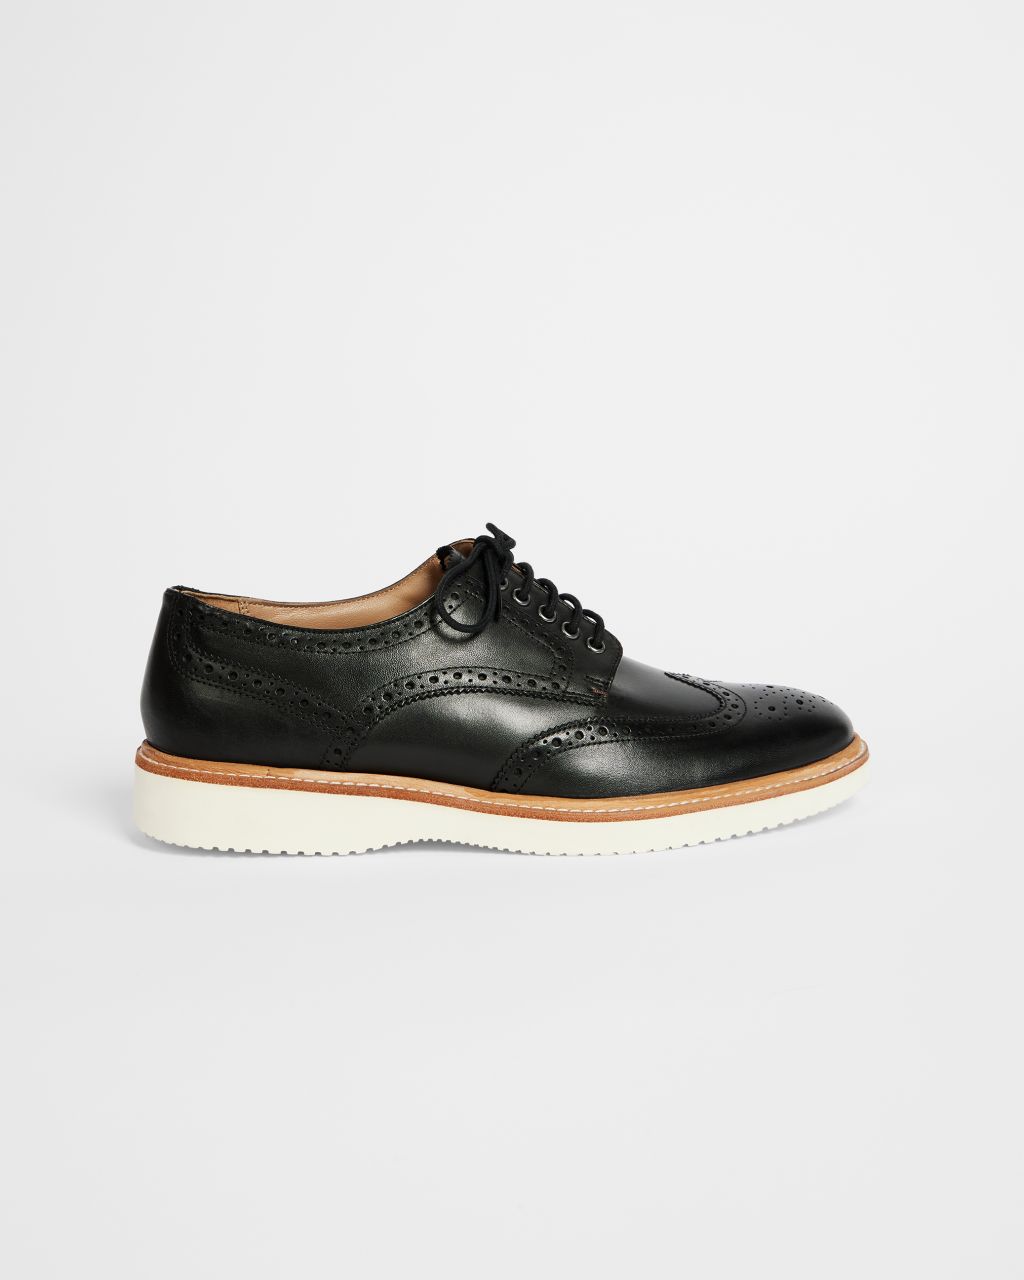 Ted Baker Men's Hybrid Brogue Shoe in Black, Edlinn, Leather